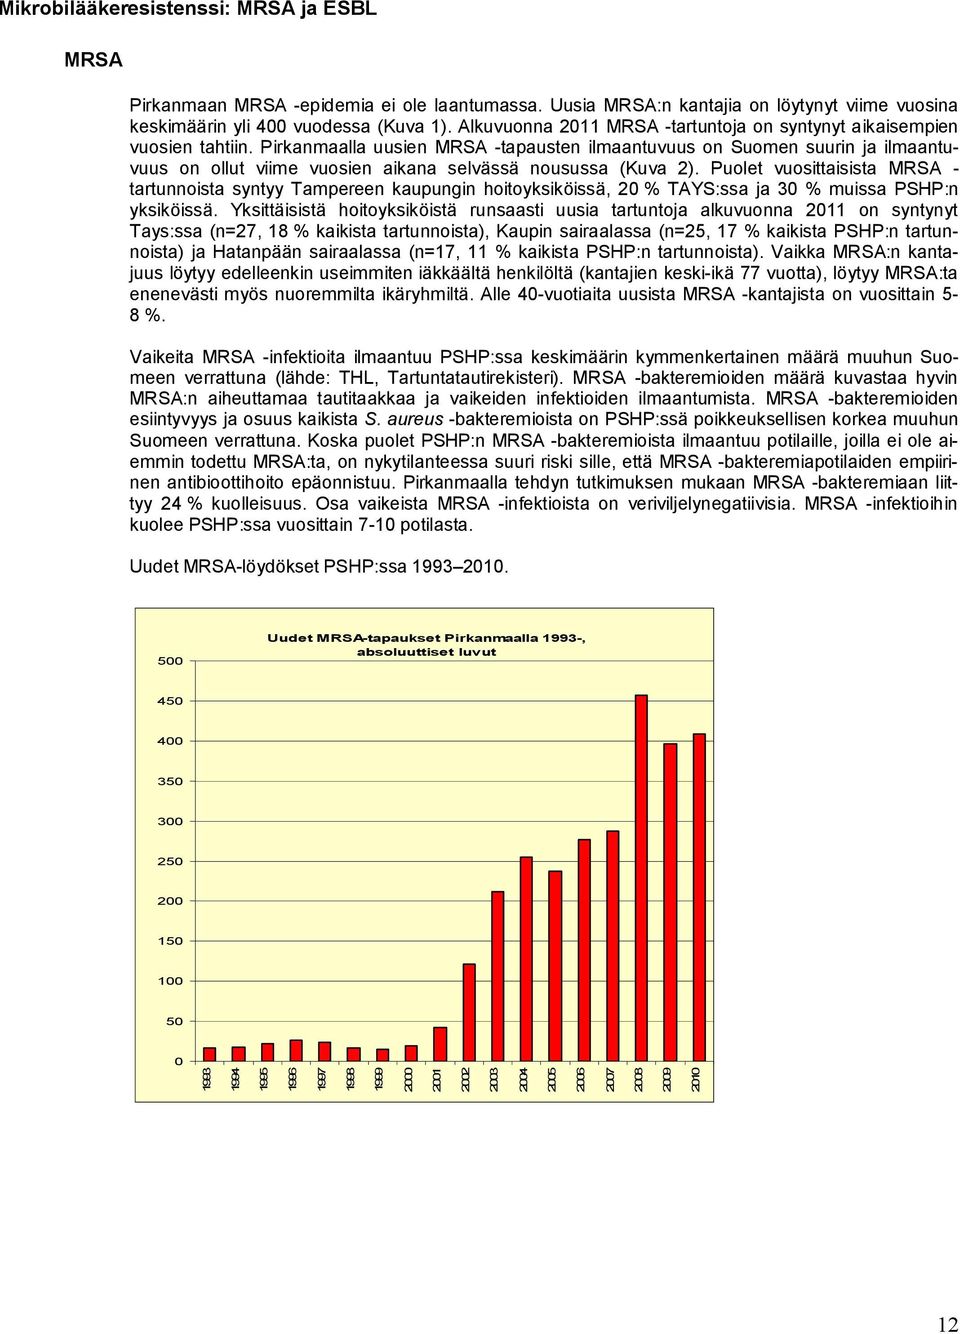 Pirkanmaalla uusien MRSA -tapausten ilmaantuvuus on Suomen suurin ja ilmaantuvuus on ollut viime vuosien aikana selvässä nousussa (Kuva 2).